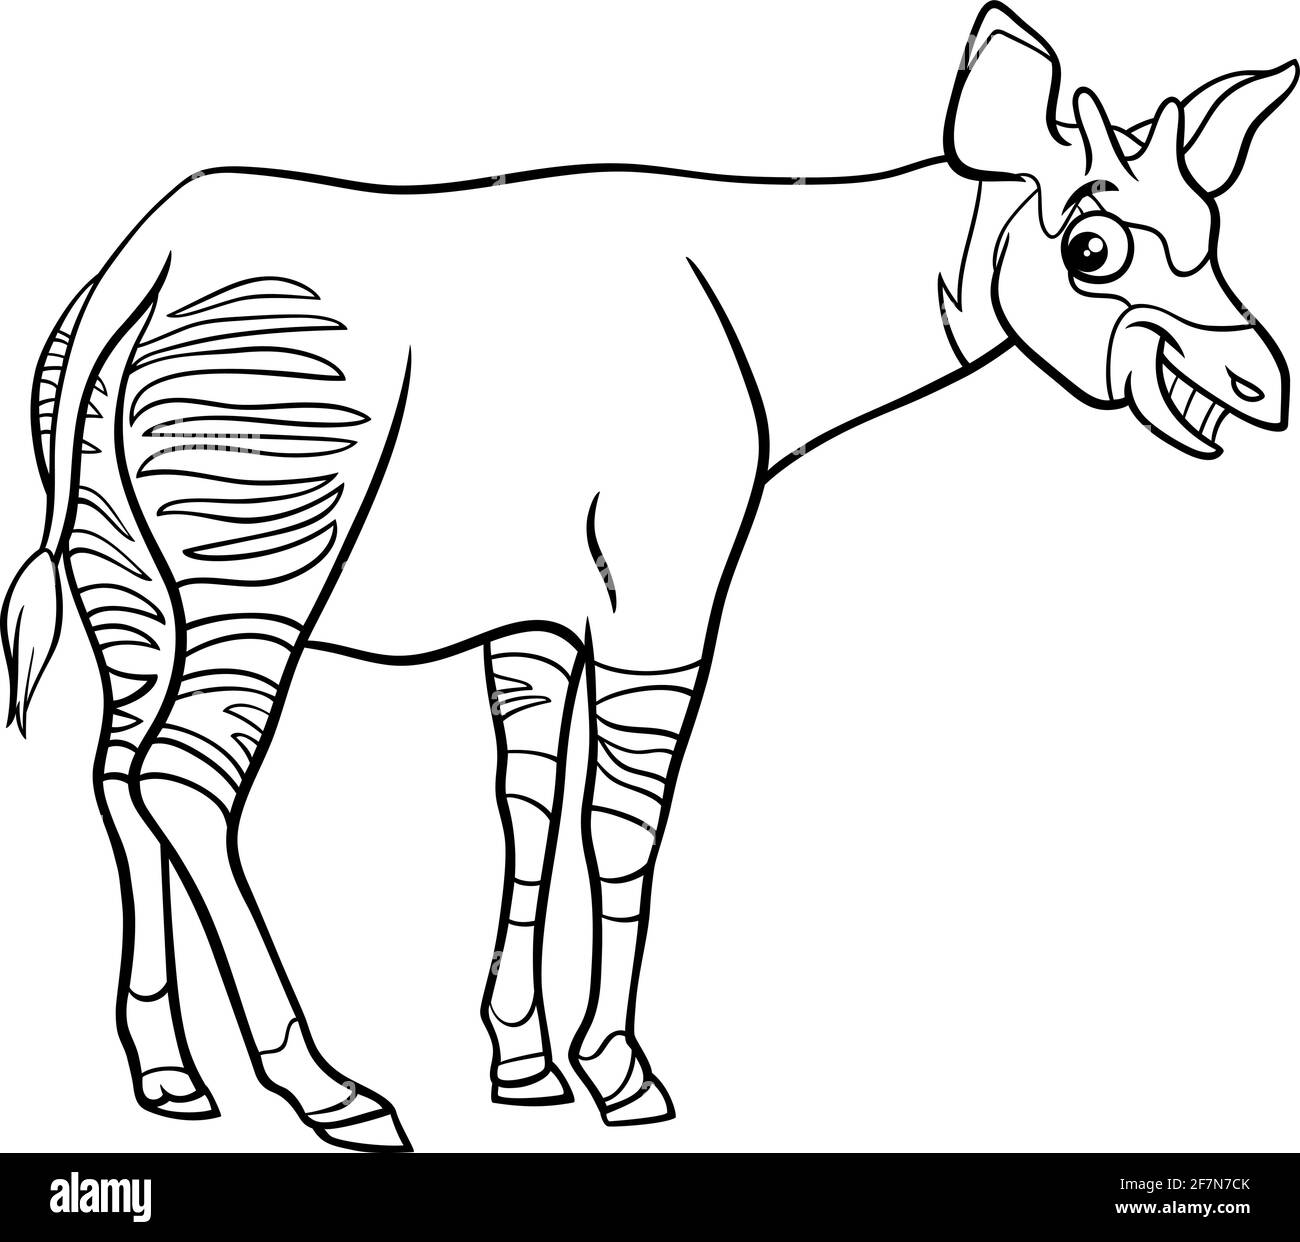 Illustration de dessin animé noir et blanc d'animal comique okapi drôle page de livre de coloriage de caractères Illustration de Vecteur